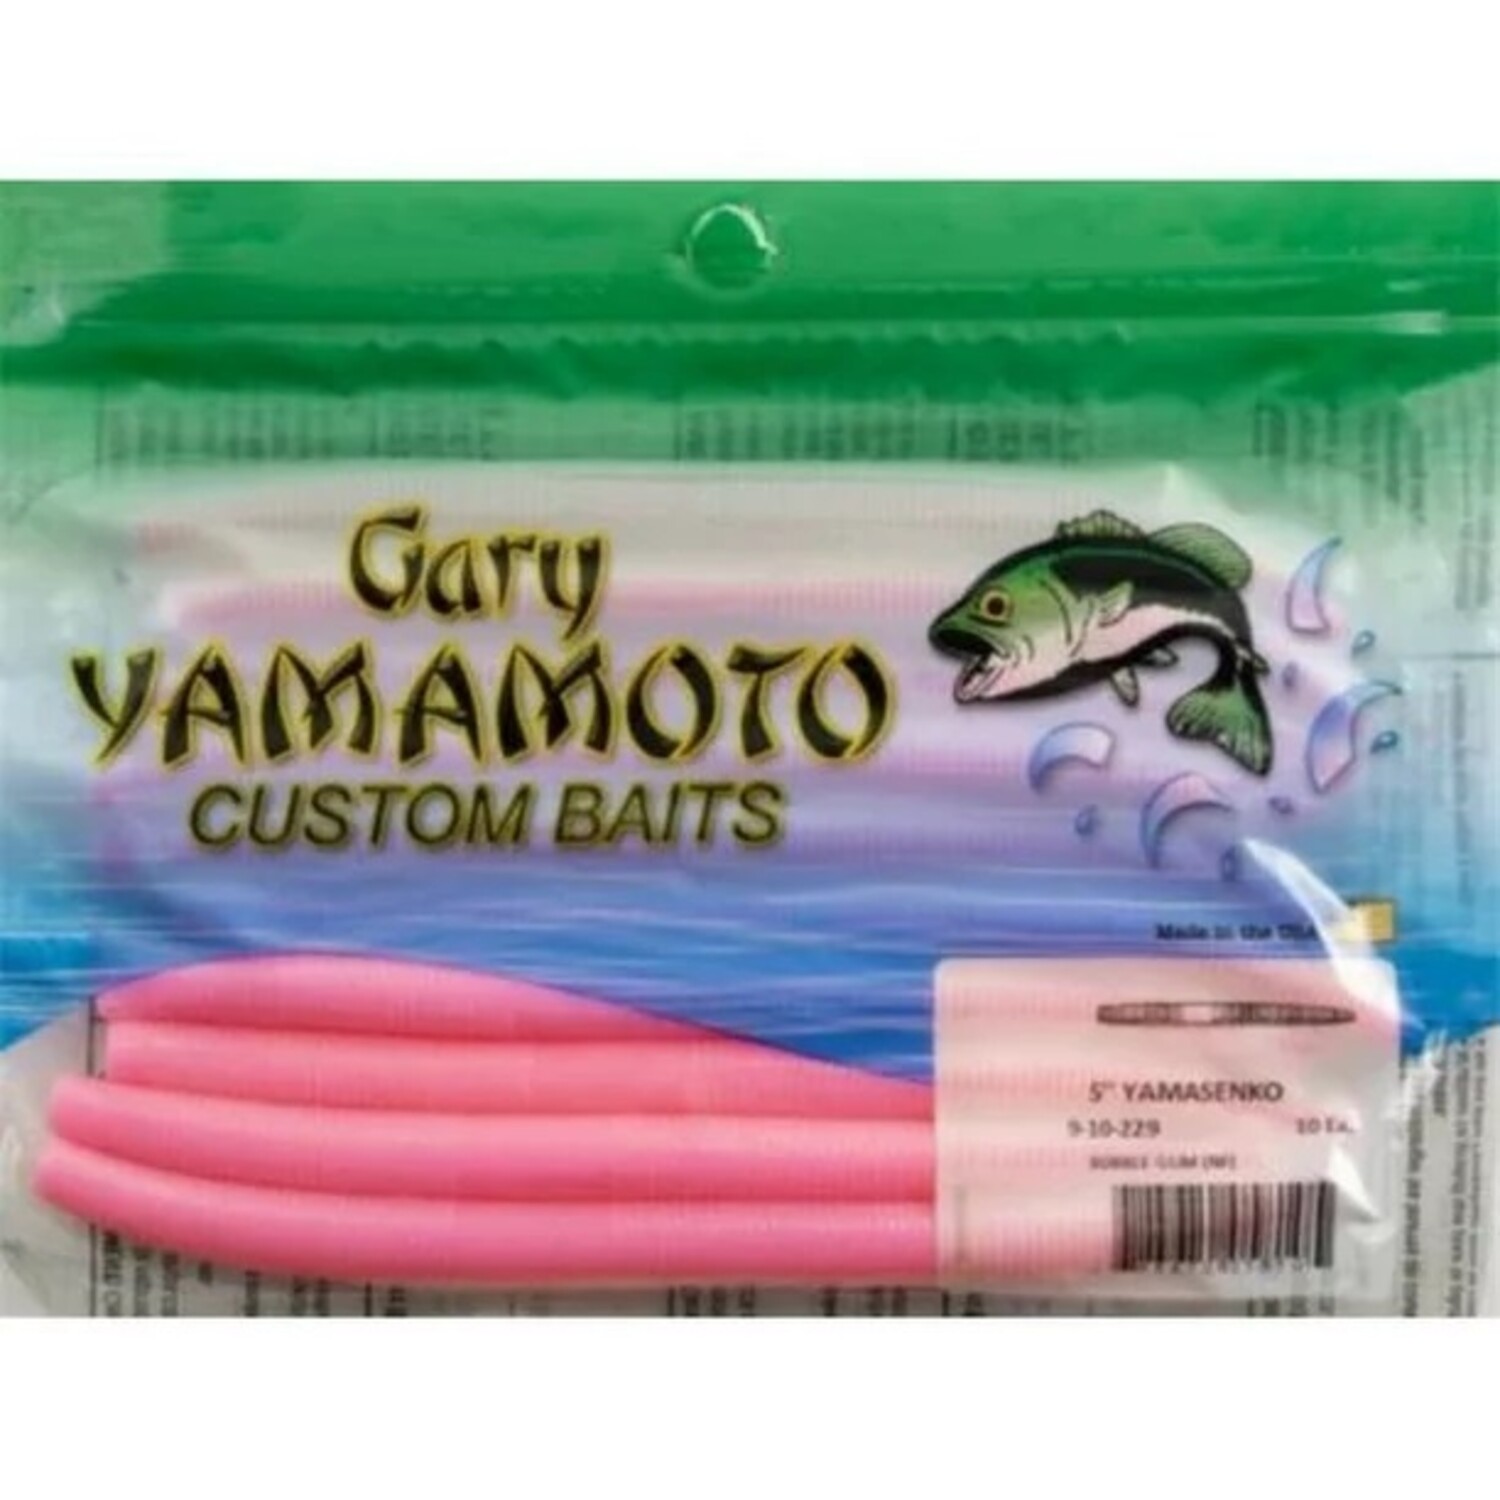 GSM outdoors Gary Yamamoto Custom Baits